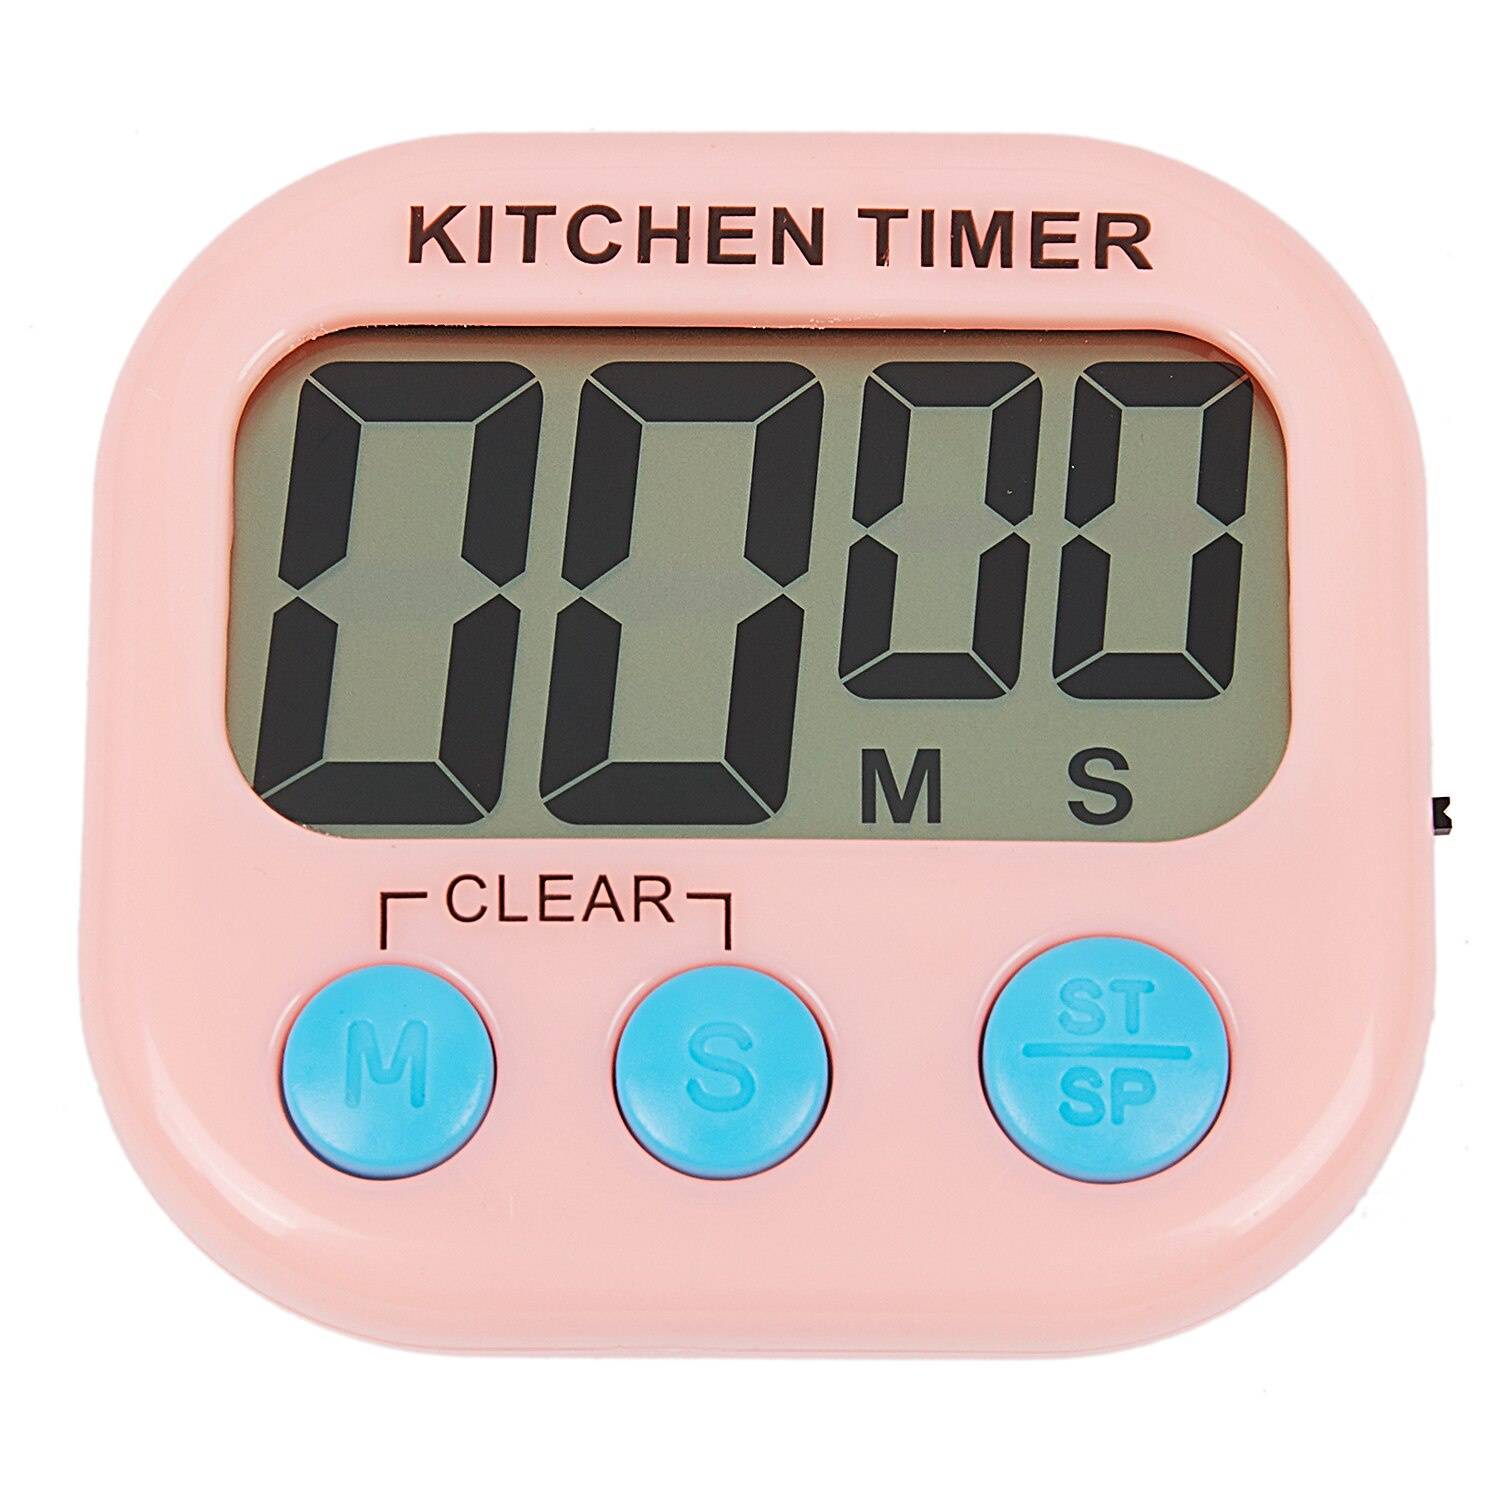 Таймер механический: как пользоваться, часы для кухни, как работает кухонный будильник